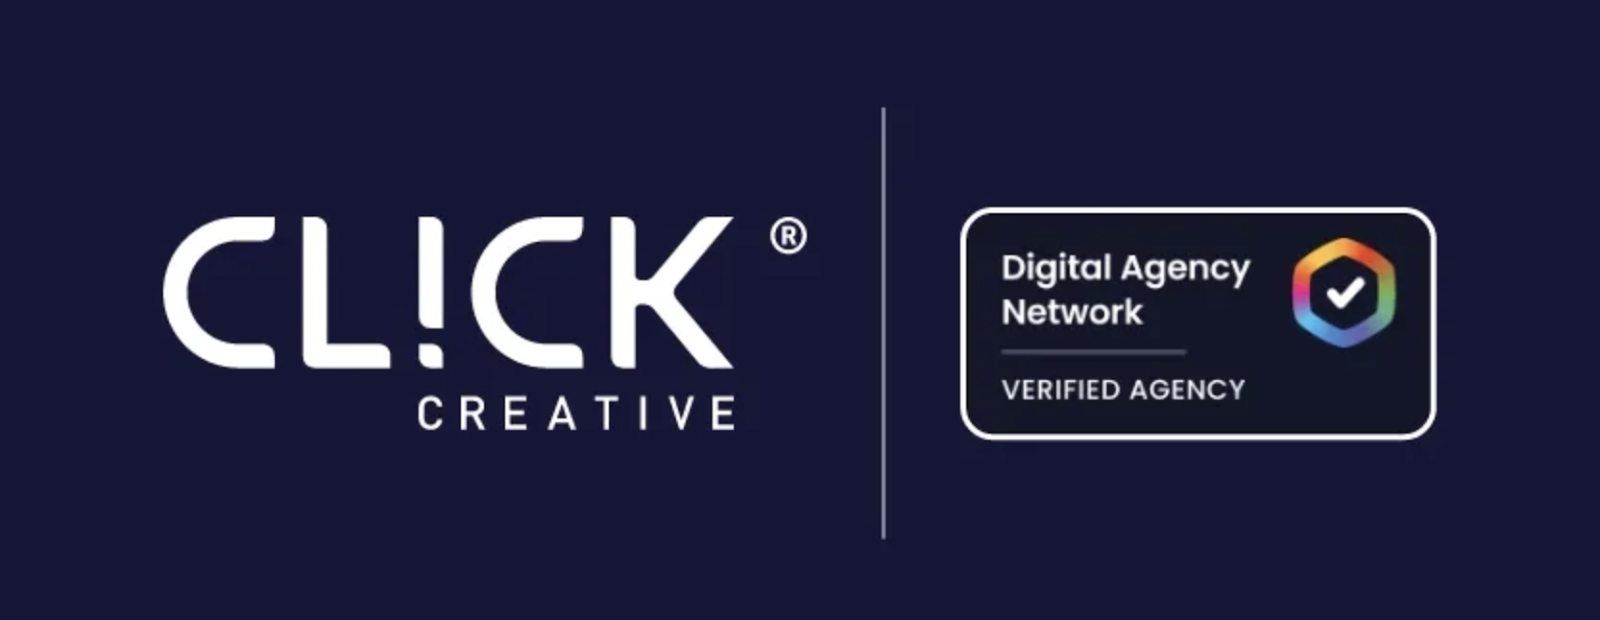 digital-agency-network-badge